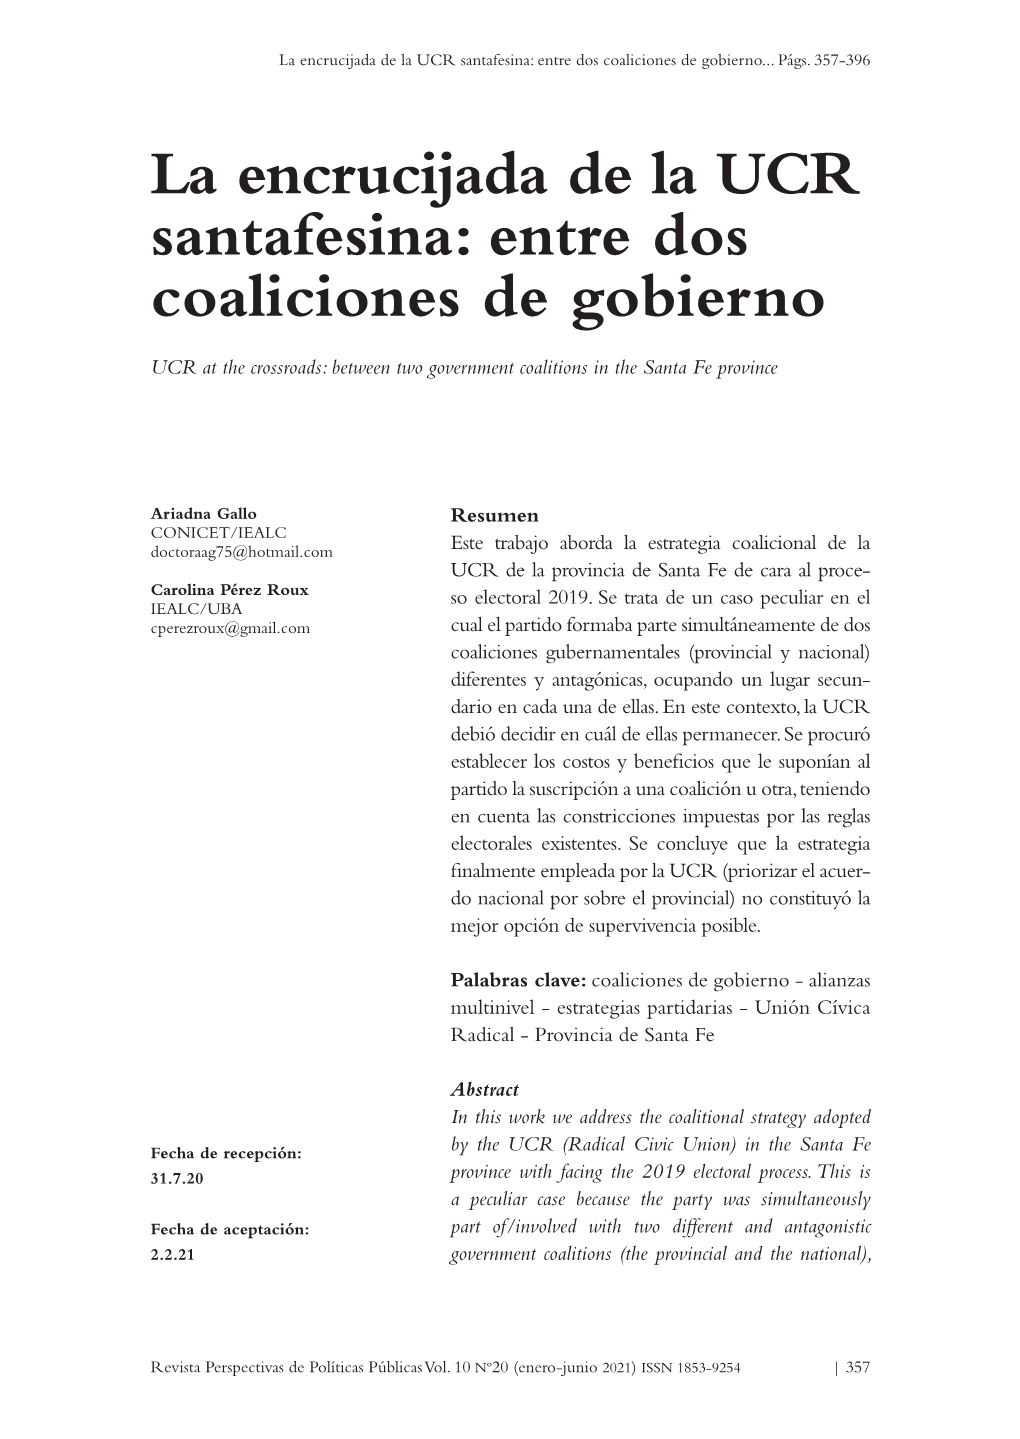 La Encrucijada De La UCR Santafesina: Entre Dos Coaliciones De Gobierno